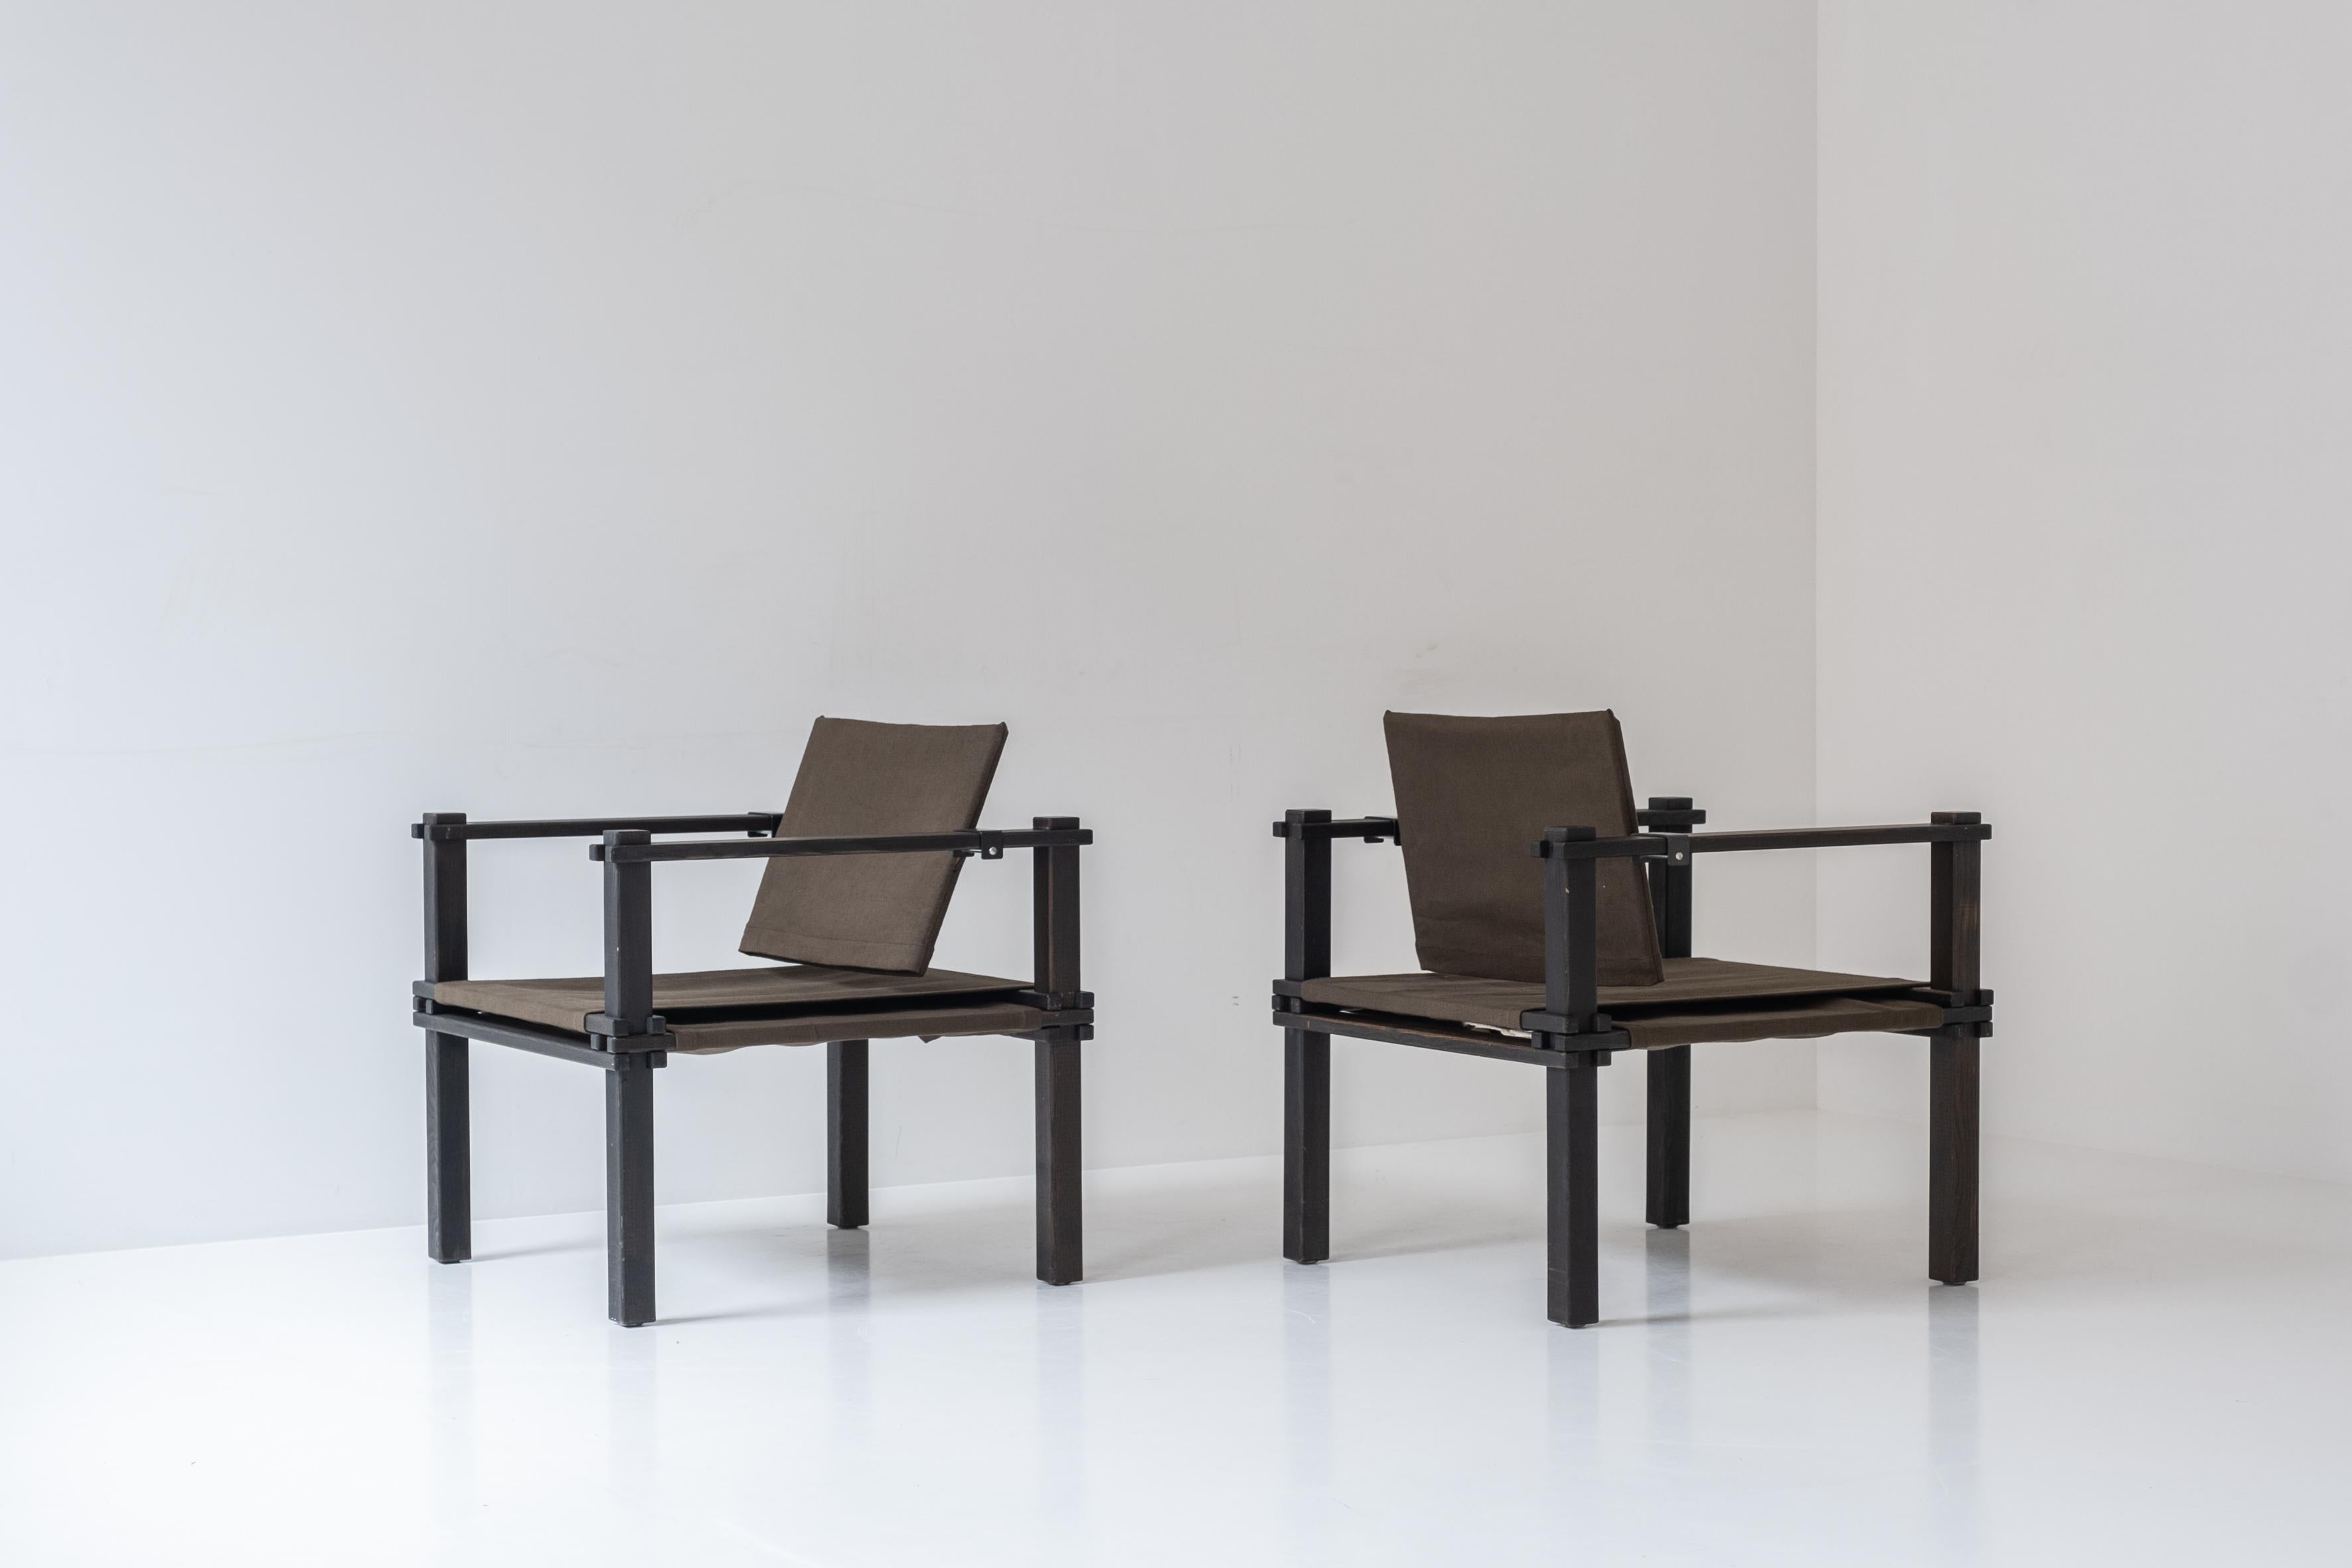 Satz von zwei einfachen Safari-Stühlen von Gerd Lange für Bofinger, Deutschland, 1960er Jahre. Diese Stühle haben ein Gestell aus gebeizter Eiche und Sitz- und Rückenlehnen aus Stoff. Diese architektonischen Stühle werden nur aus Holzelementen